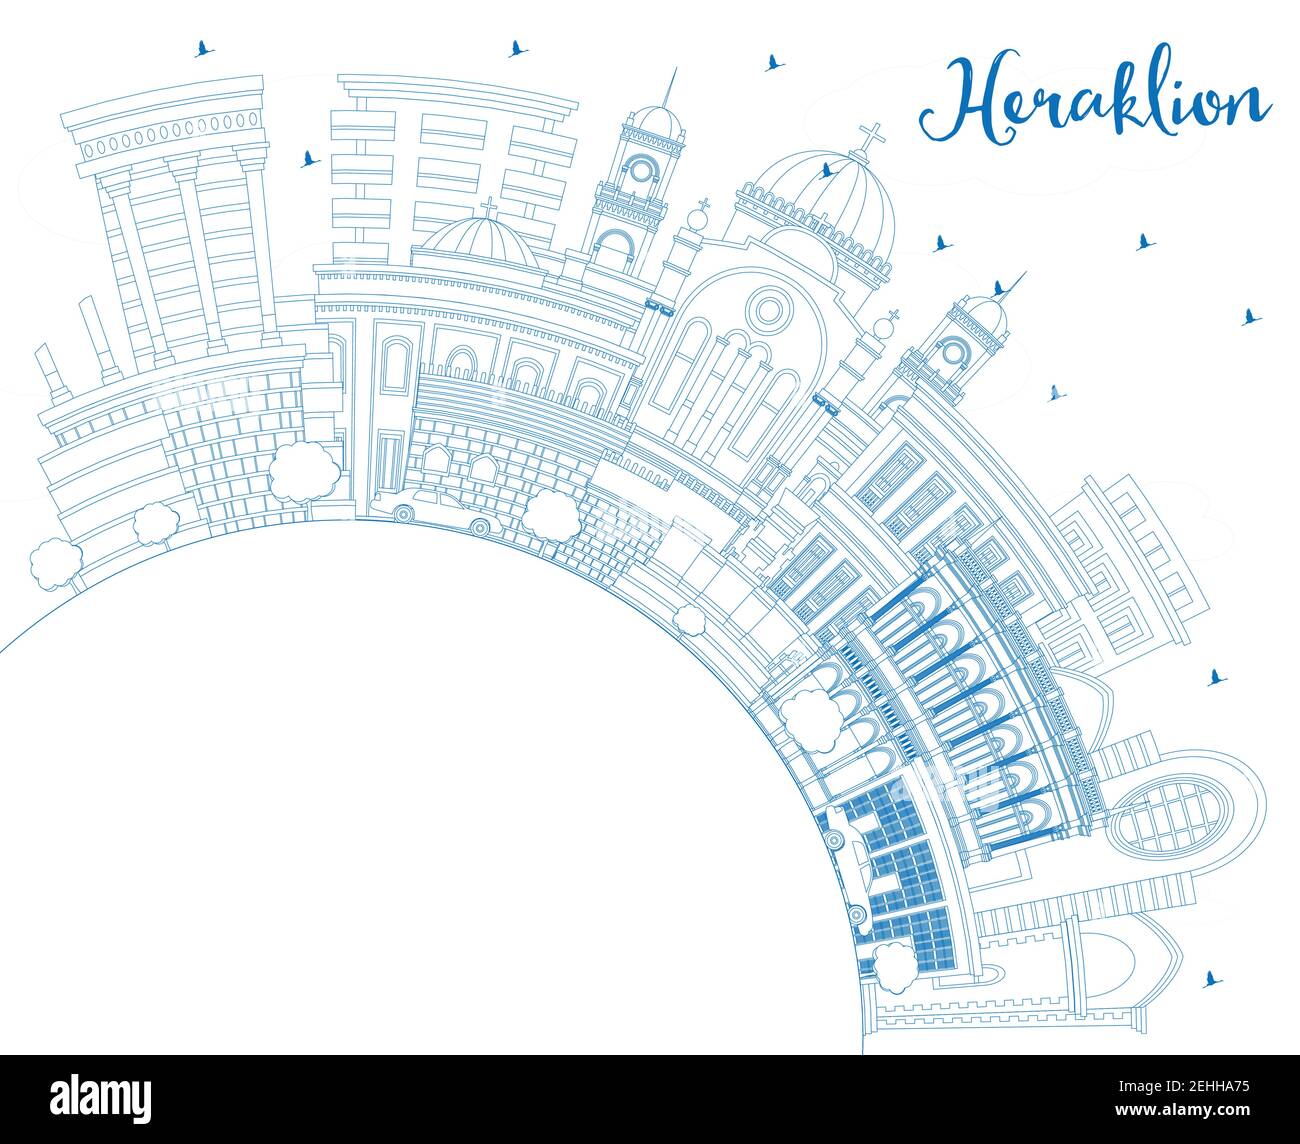 Aperçu Héraklion Grèce Crete City Skyline avec Blue Buildings et Copy Space. Illustration vectorielle. Architecture historique et moderne. Illustration de Vecteur